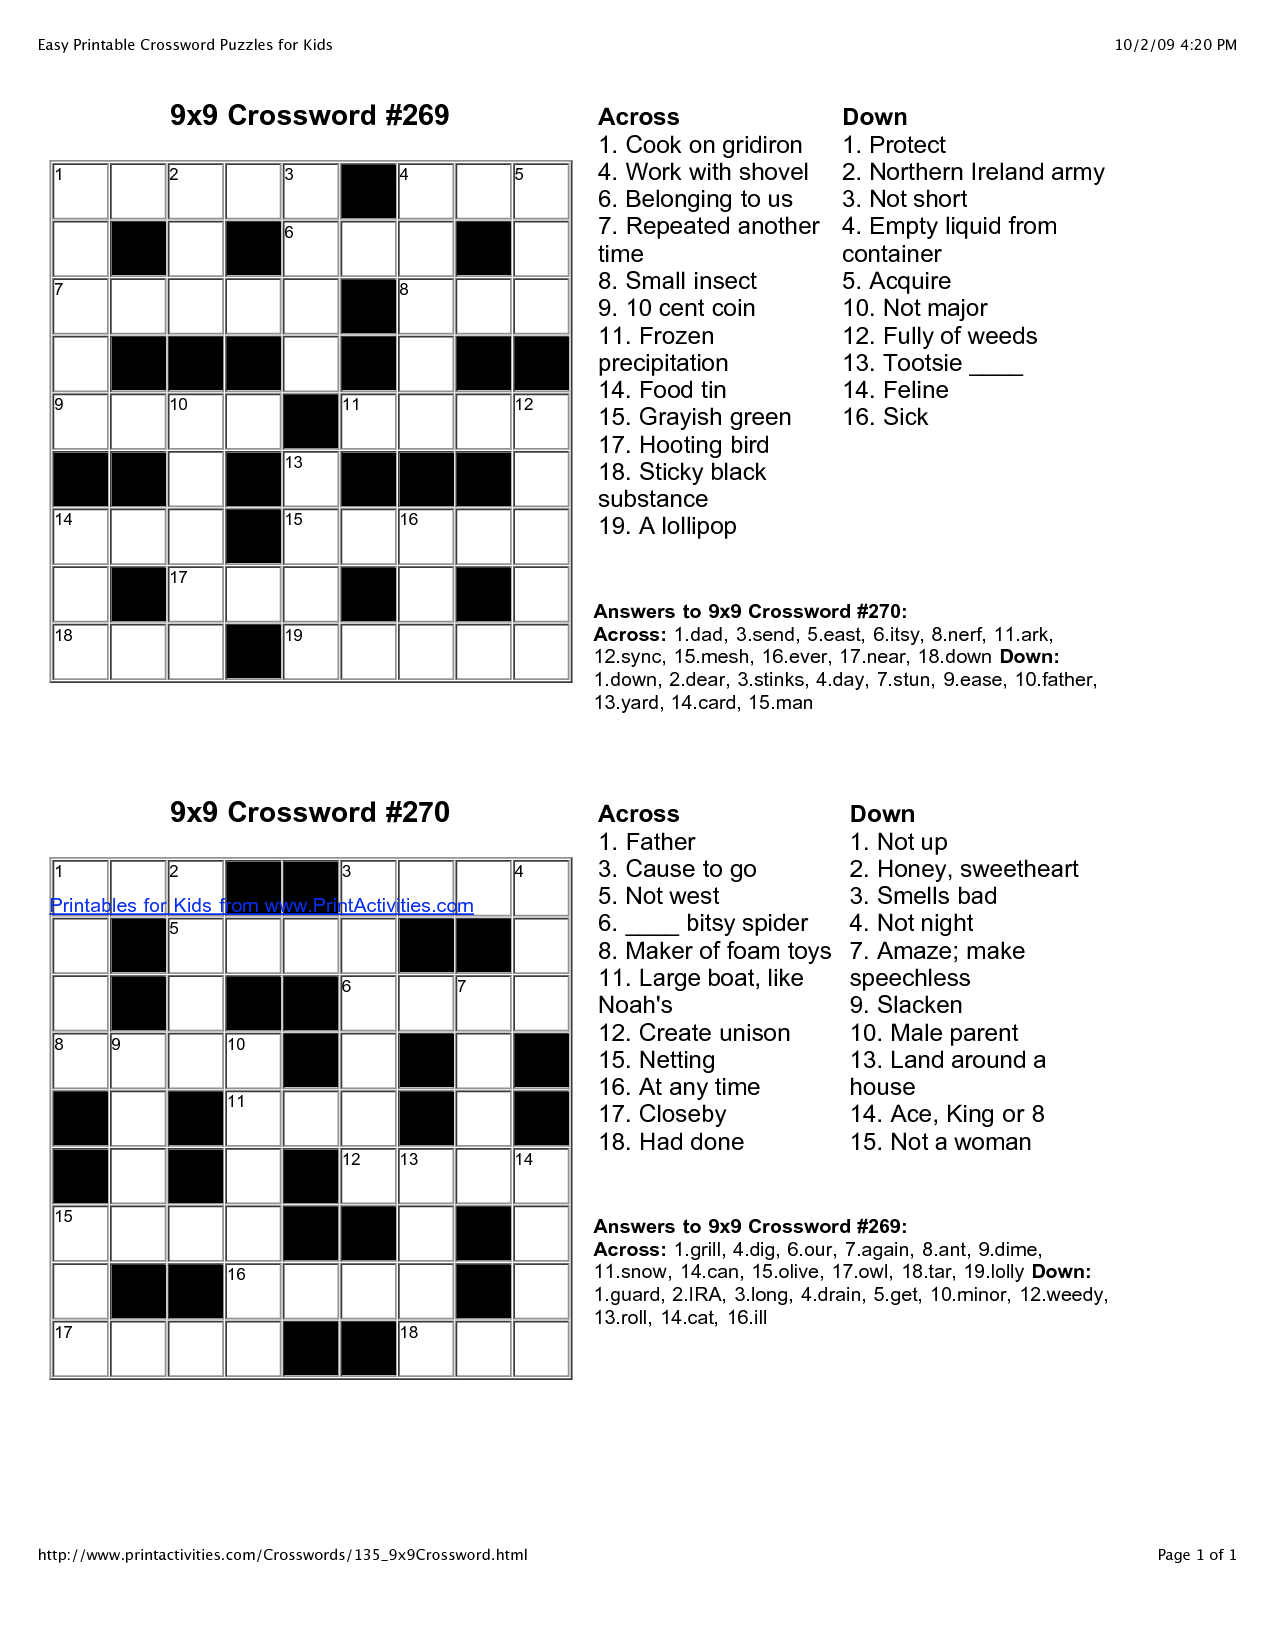 Easy Crossword Puzzles Printable Crossword Puzzles Crossword Puzzles 